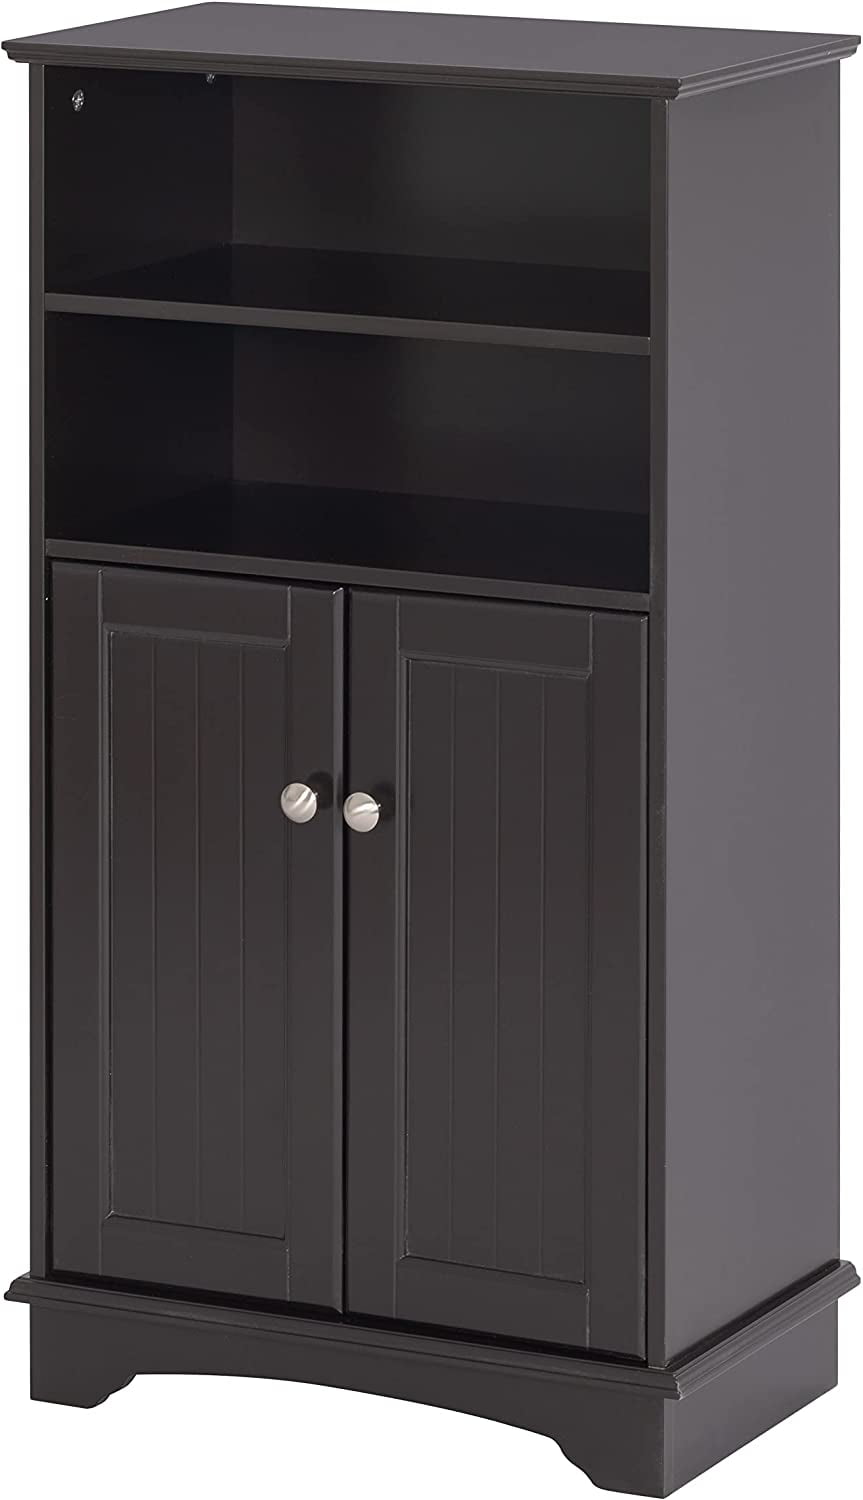 Spirich Bathroom Storage Cabinet Wood Floor Cabinet With Double Doors